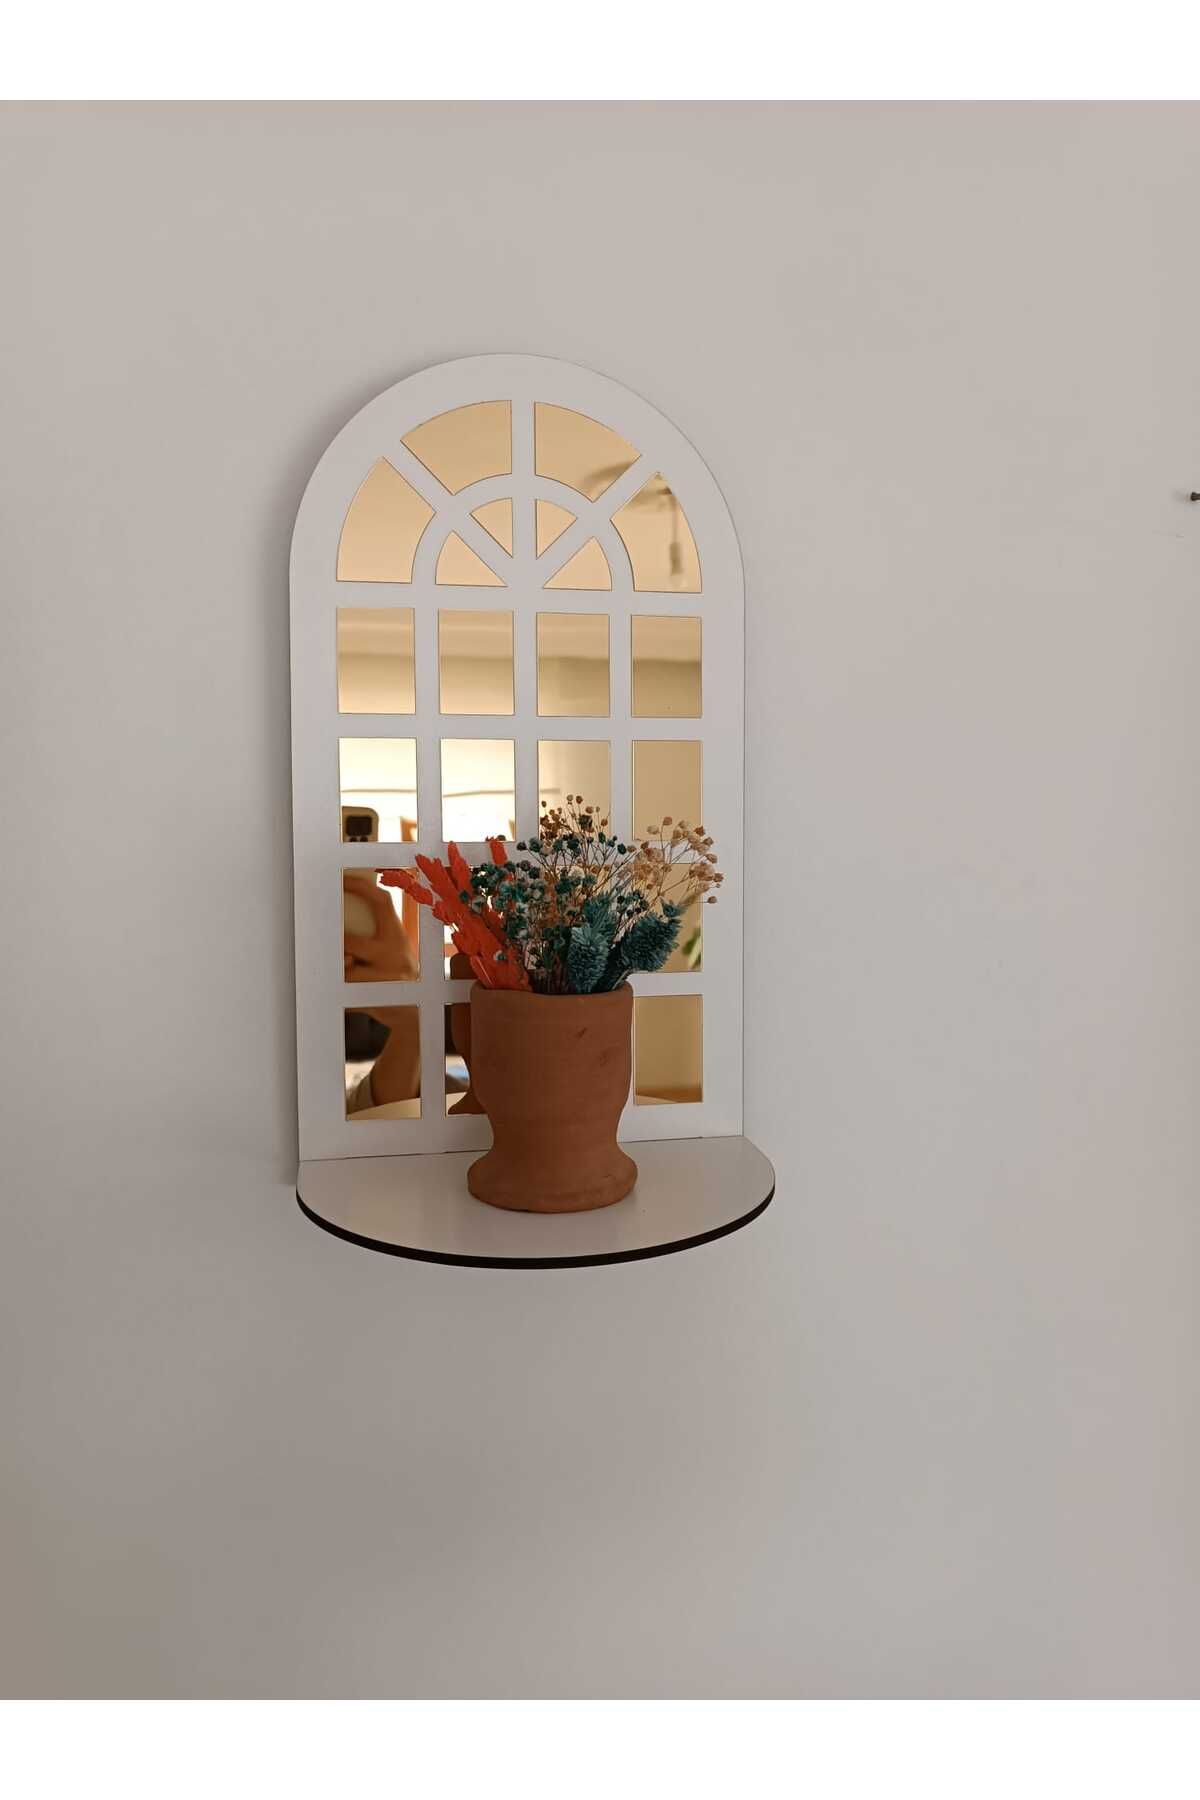 Arlesia Hint Penceresi Duvar Rafı 4 mm Beyaz MDF 1 mm GOLD Aynalı Pleksi Modern, Şık, Dekoratif